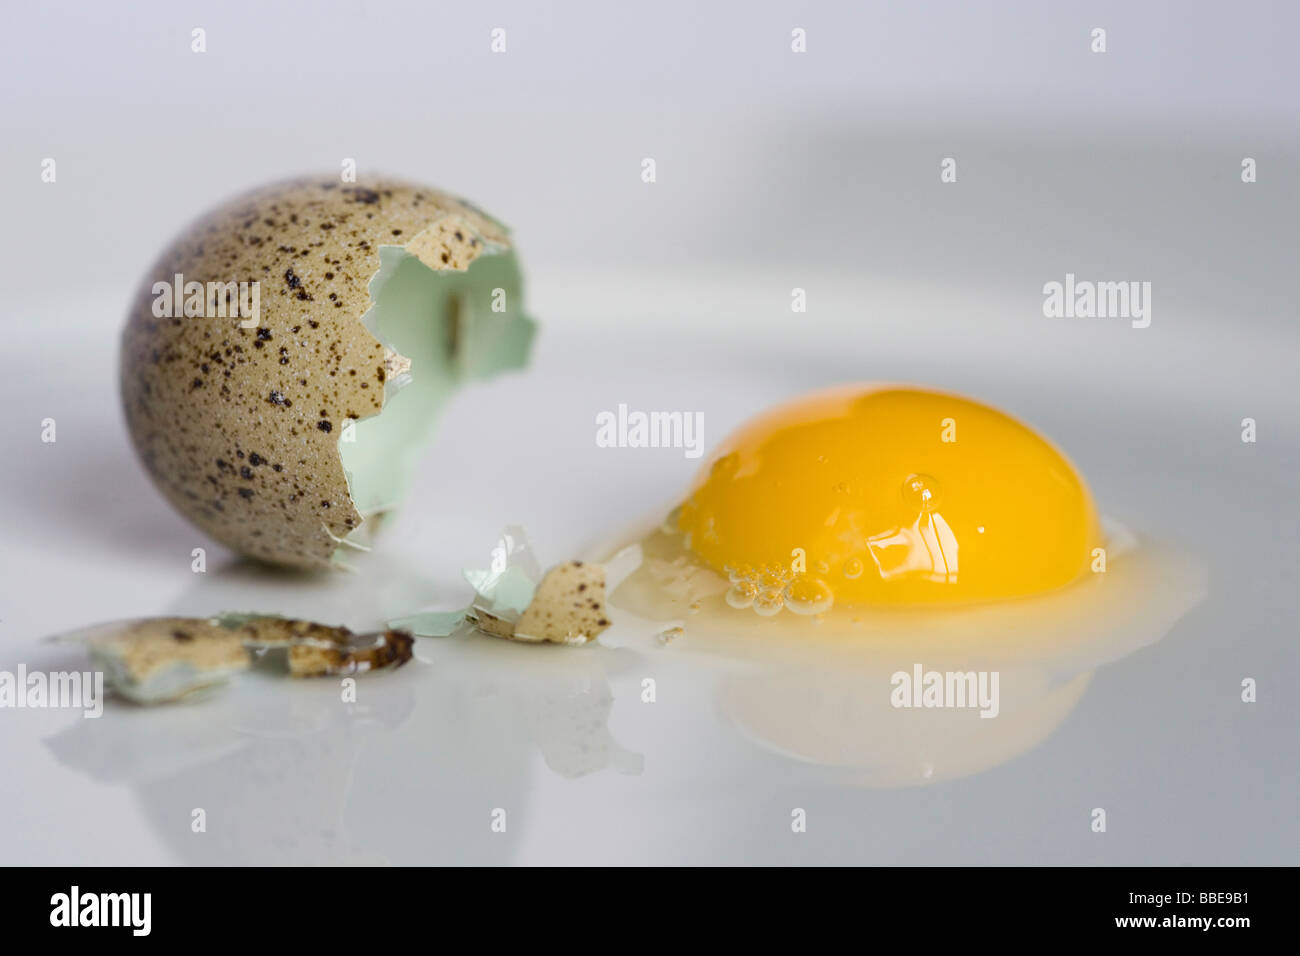 Quail egg cracked open, broken egg shell, yolk, egg white, reflected on a white plate Stock Photo